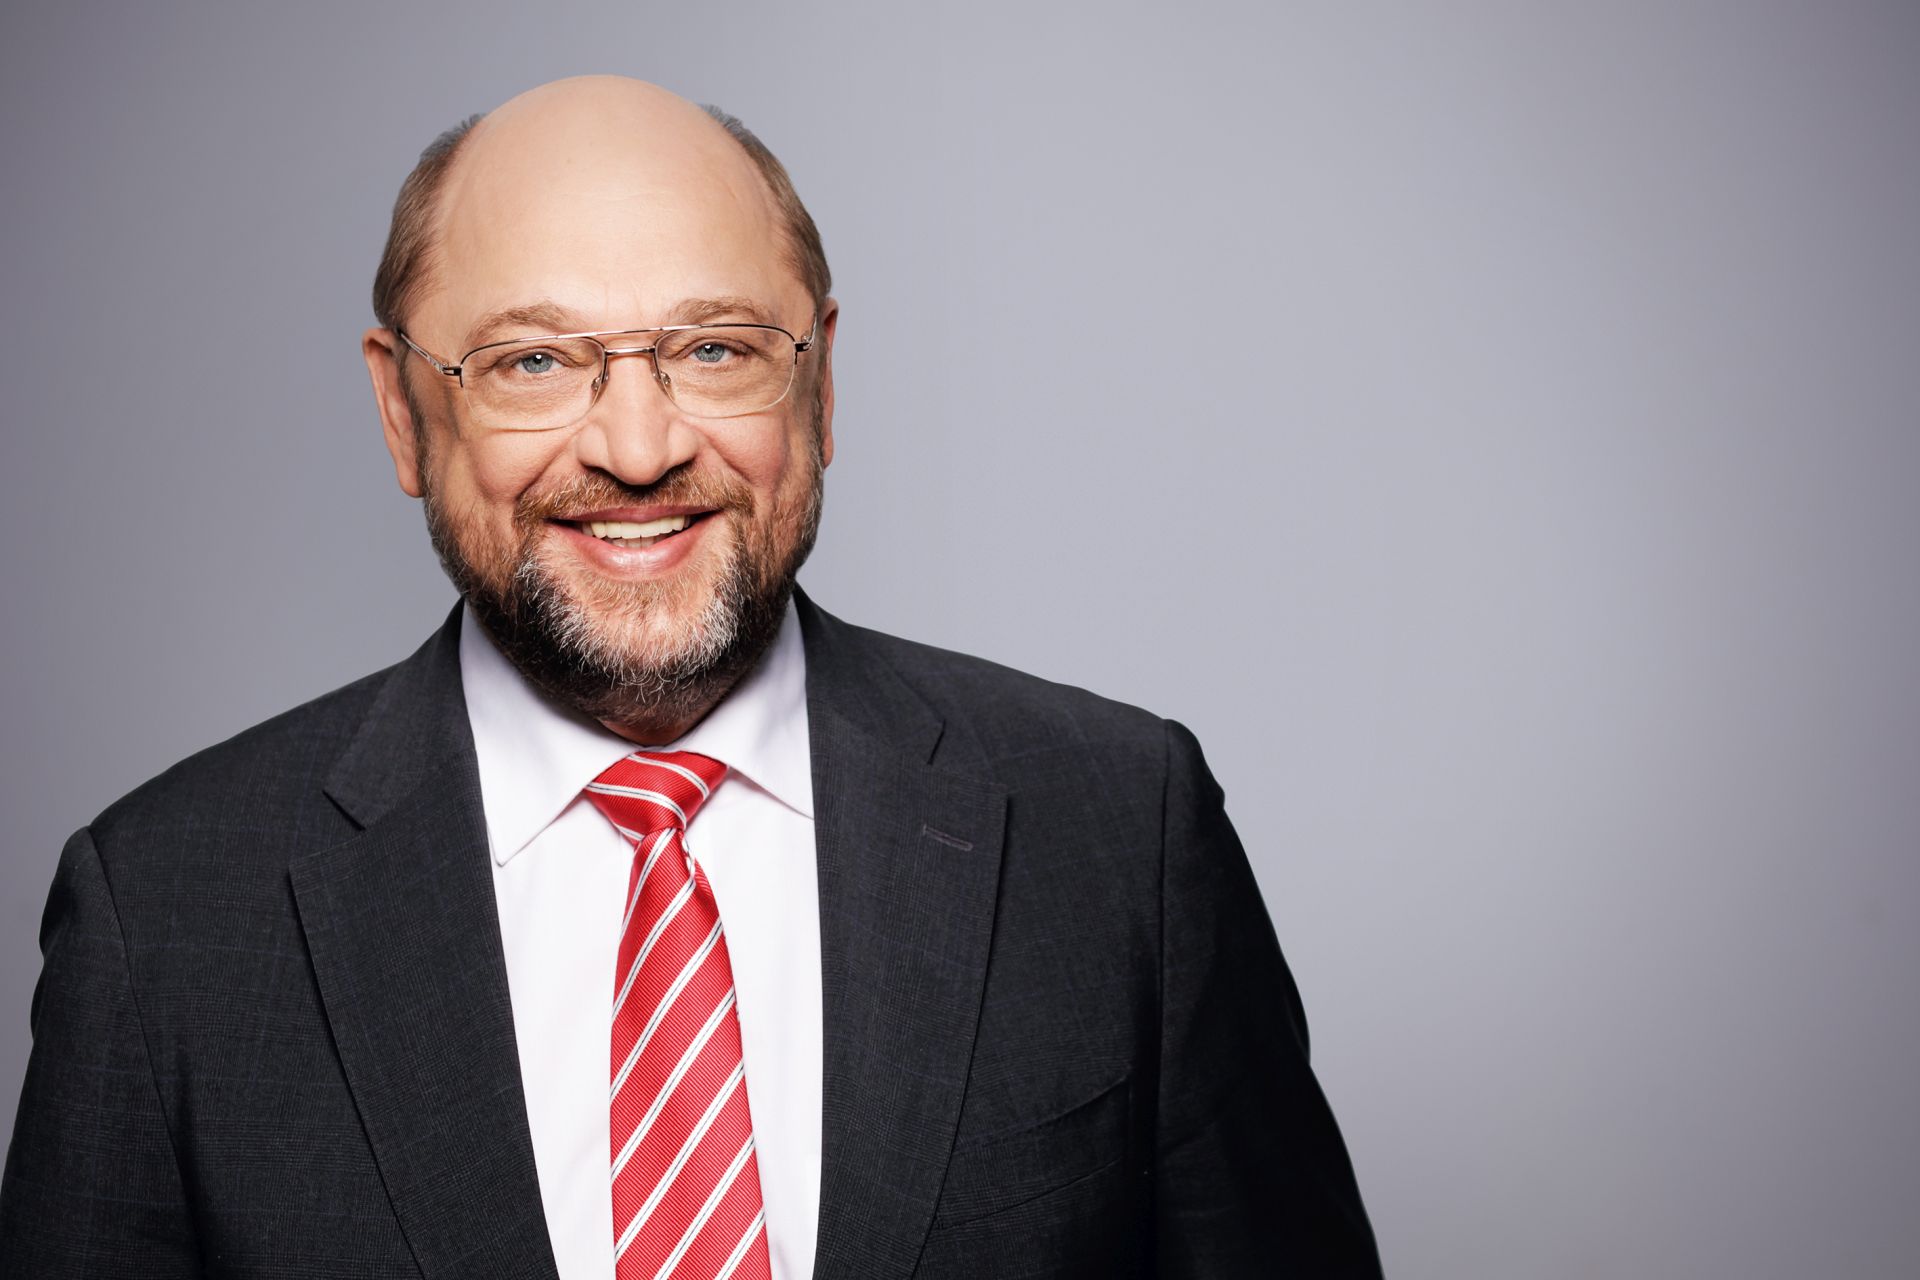 Offizielle Porträtfotografie von Martin Schulz, 2015.